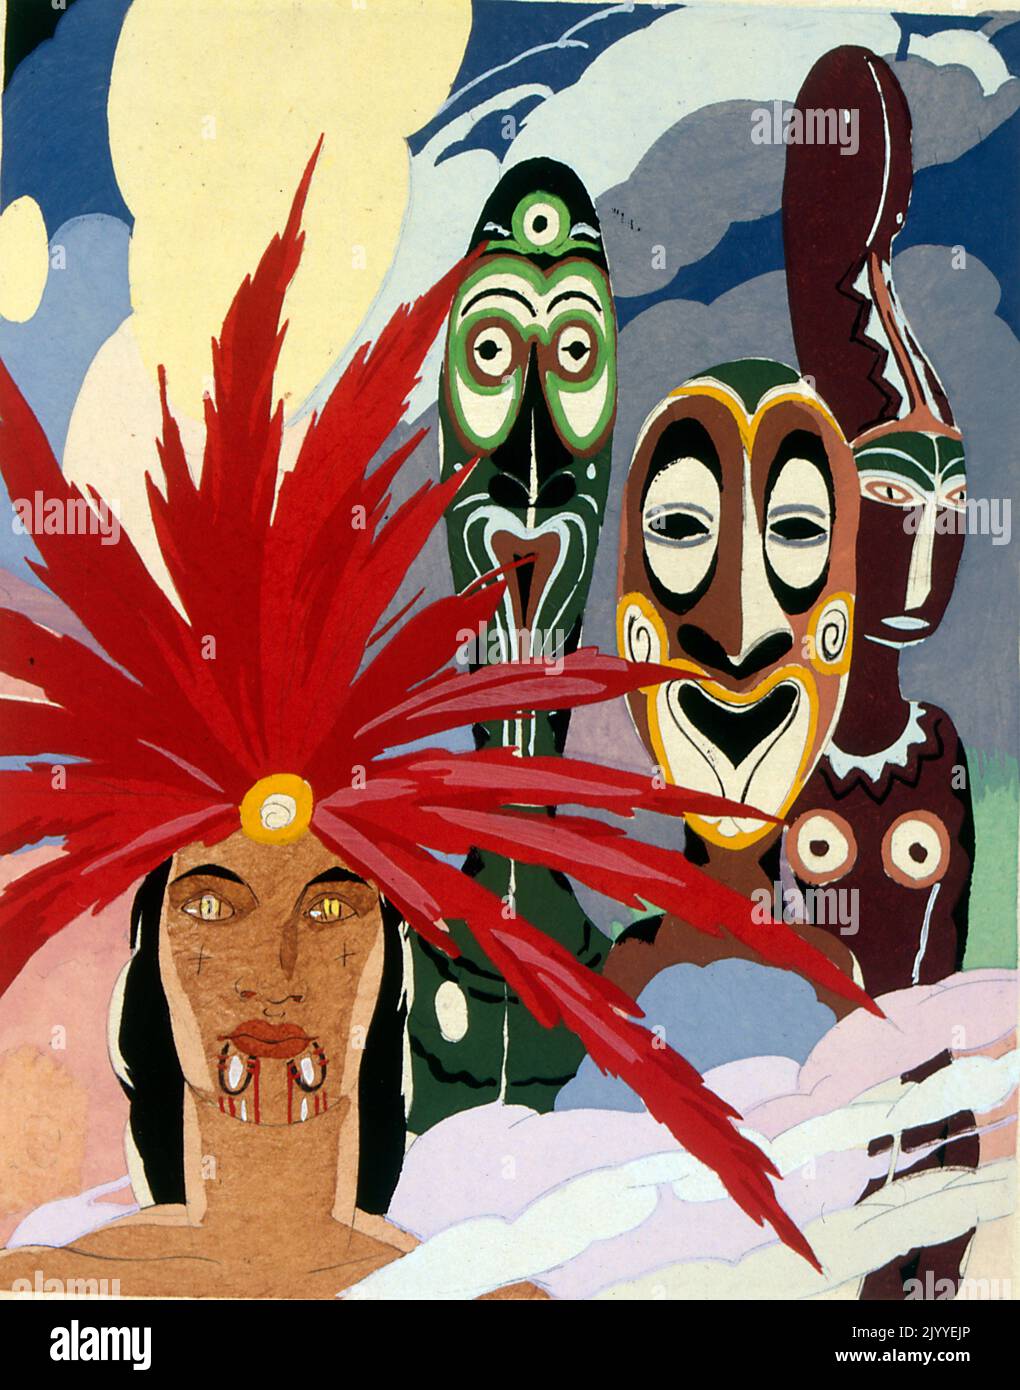 Illustrazione colorata raffigurante un uomo con un erpeto di piuma di uccello del paradiso, circondato dalle arti e dall'artigianato del fiume Sepik; sembra provenire dalla regione del fiume Sepik in Papua Nuova Guinea. Foto Stock